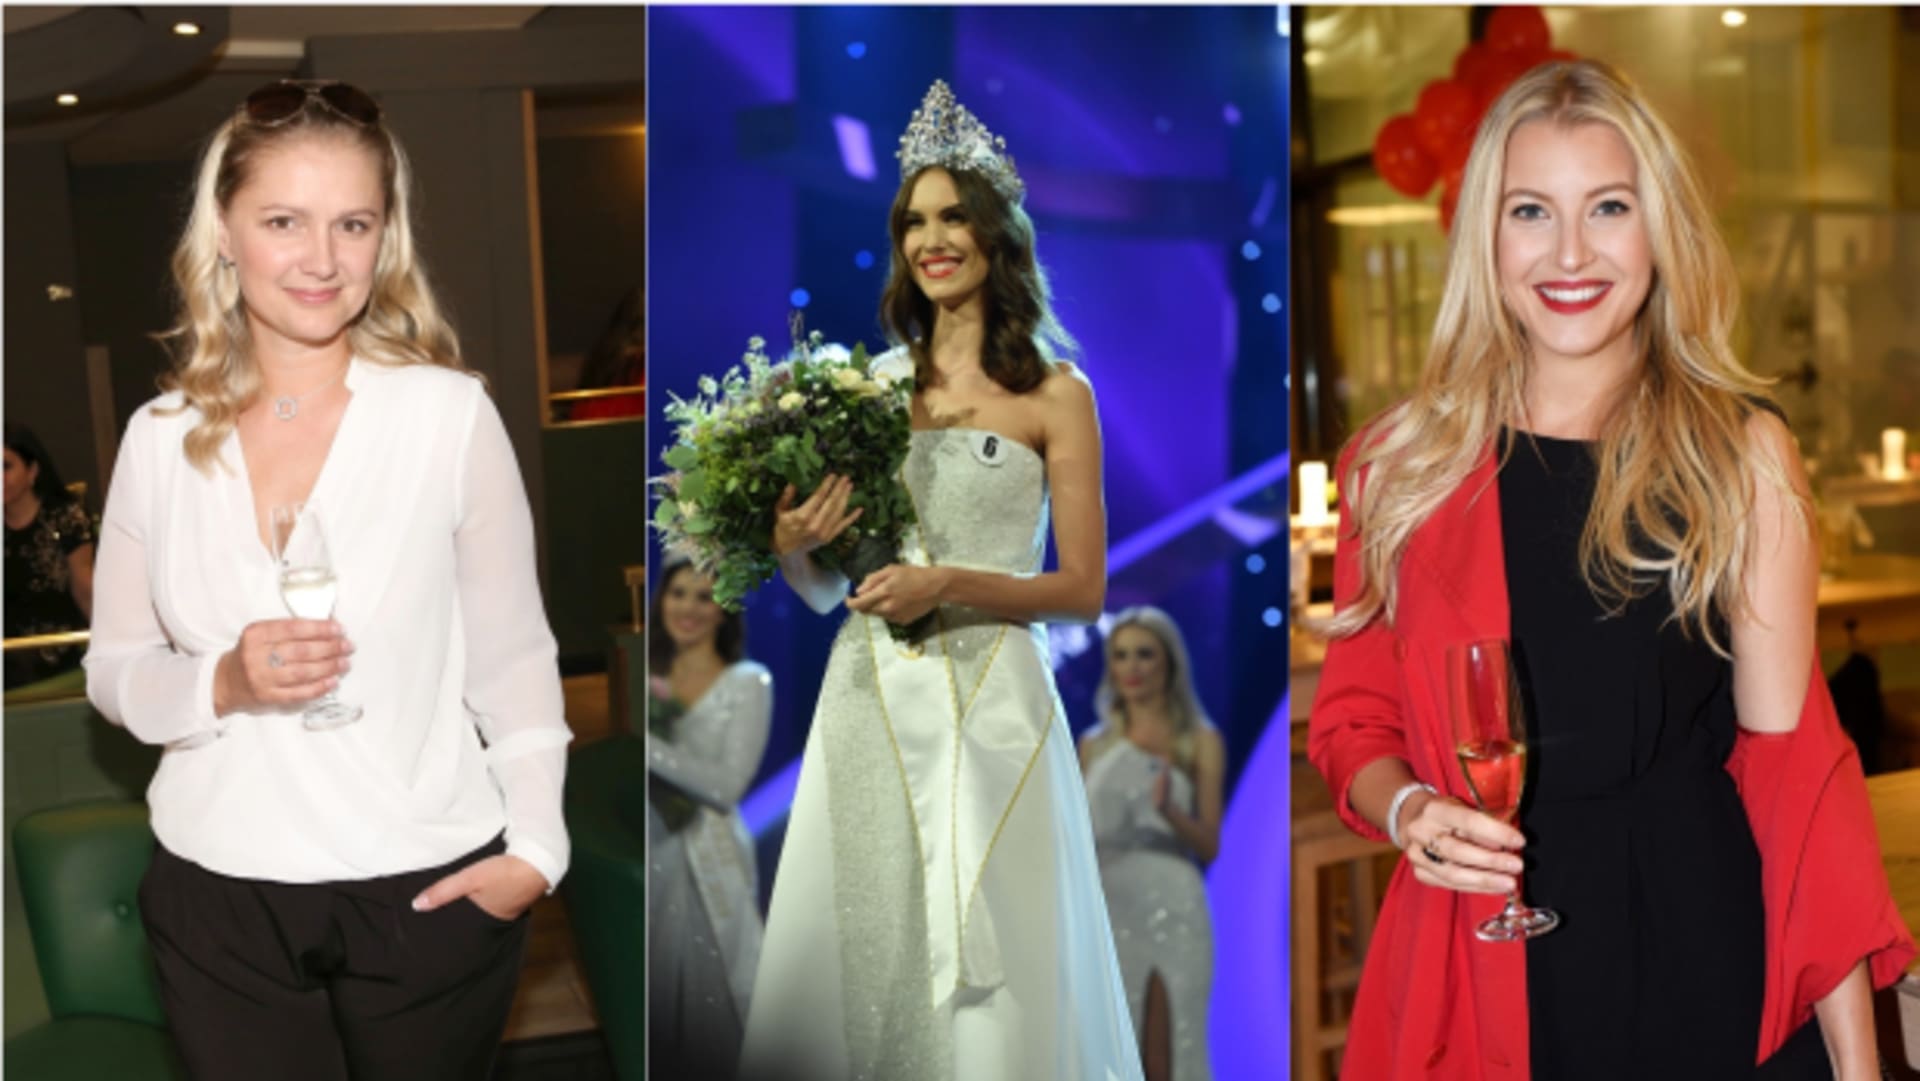 Tyto české Miss boří mýty o tom, že krása a vzdělání nejdou dohromady